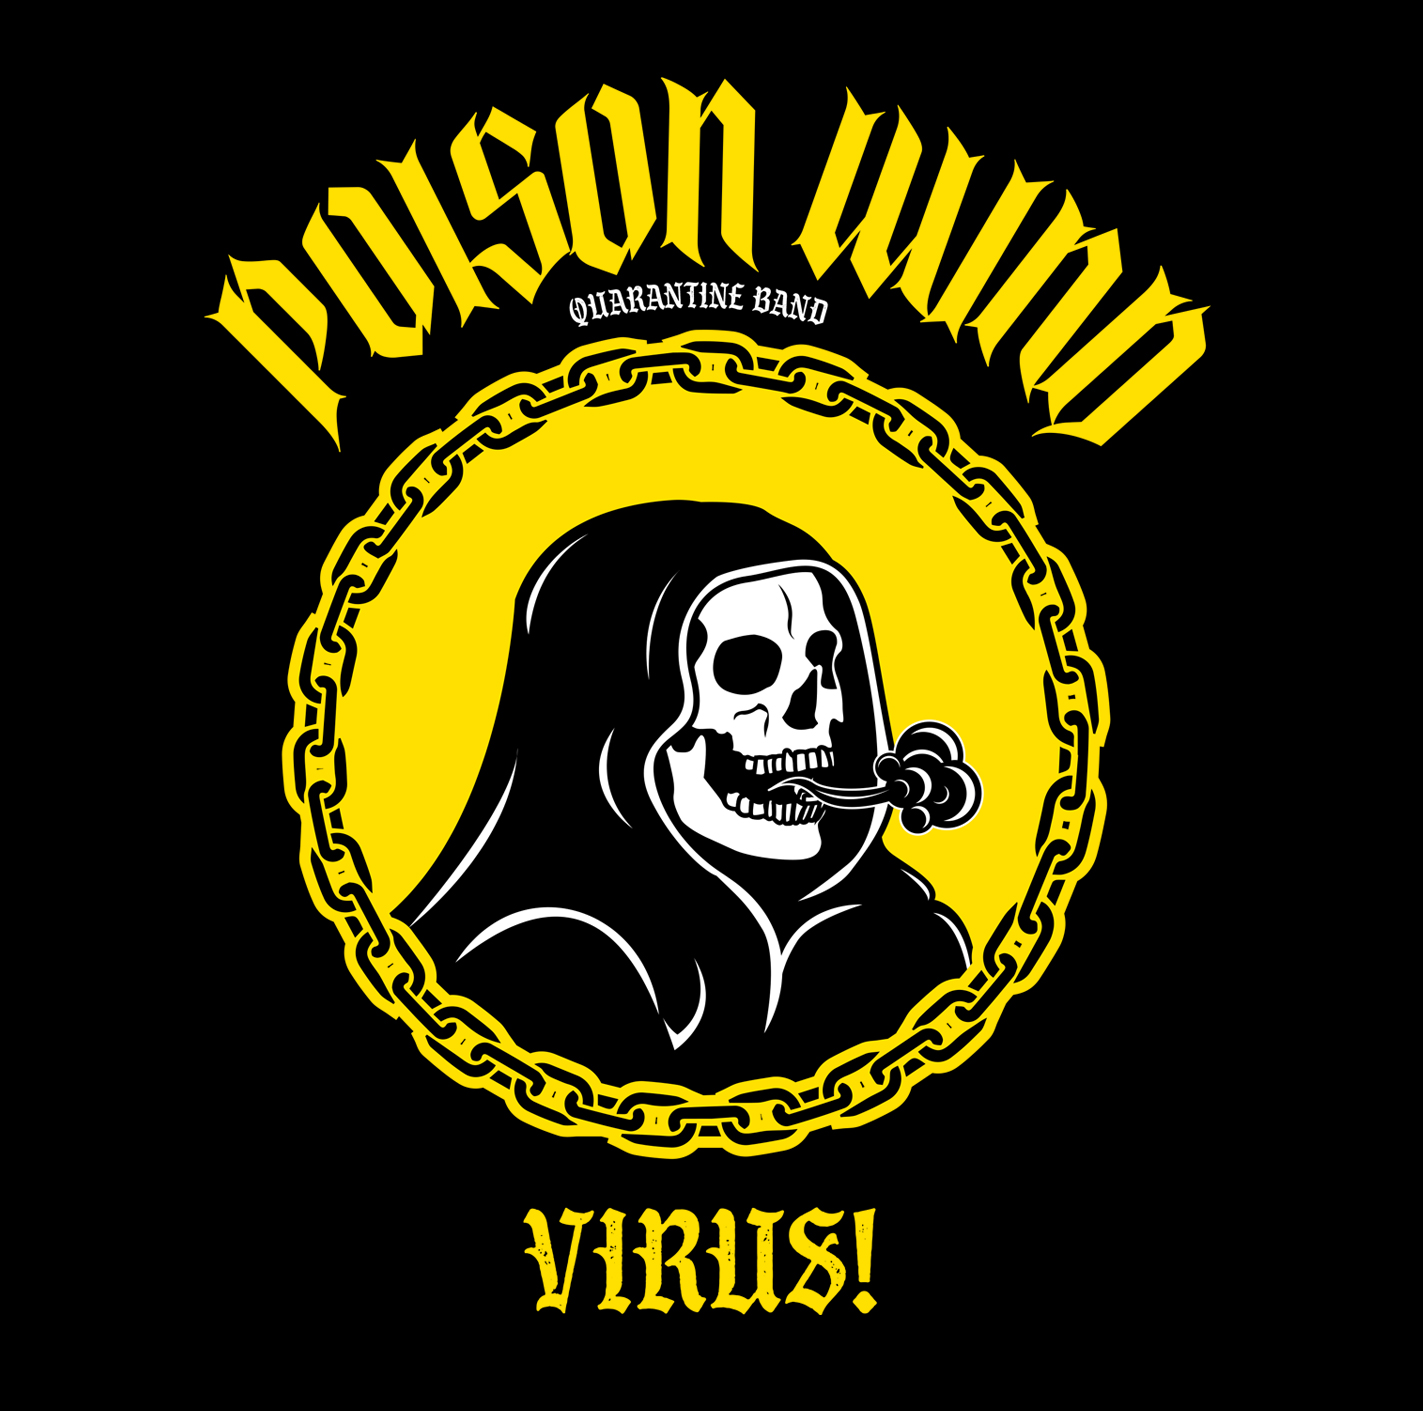 Poison Wind Album Cover Design